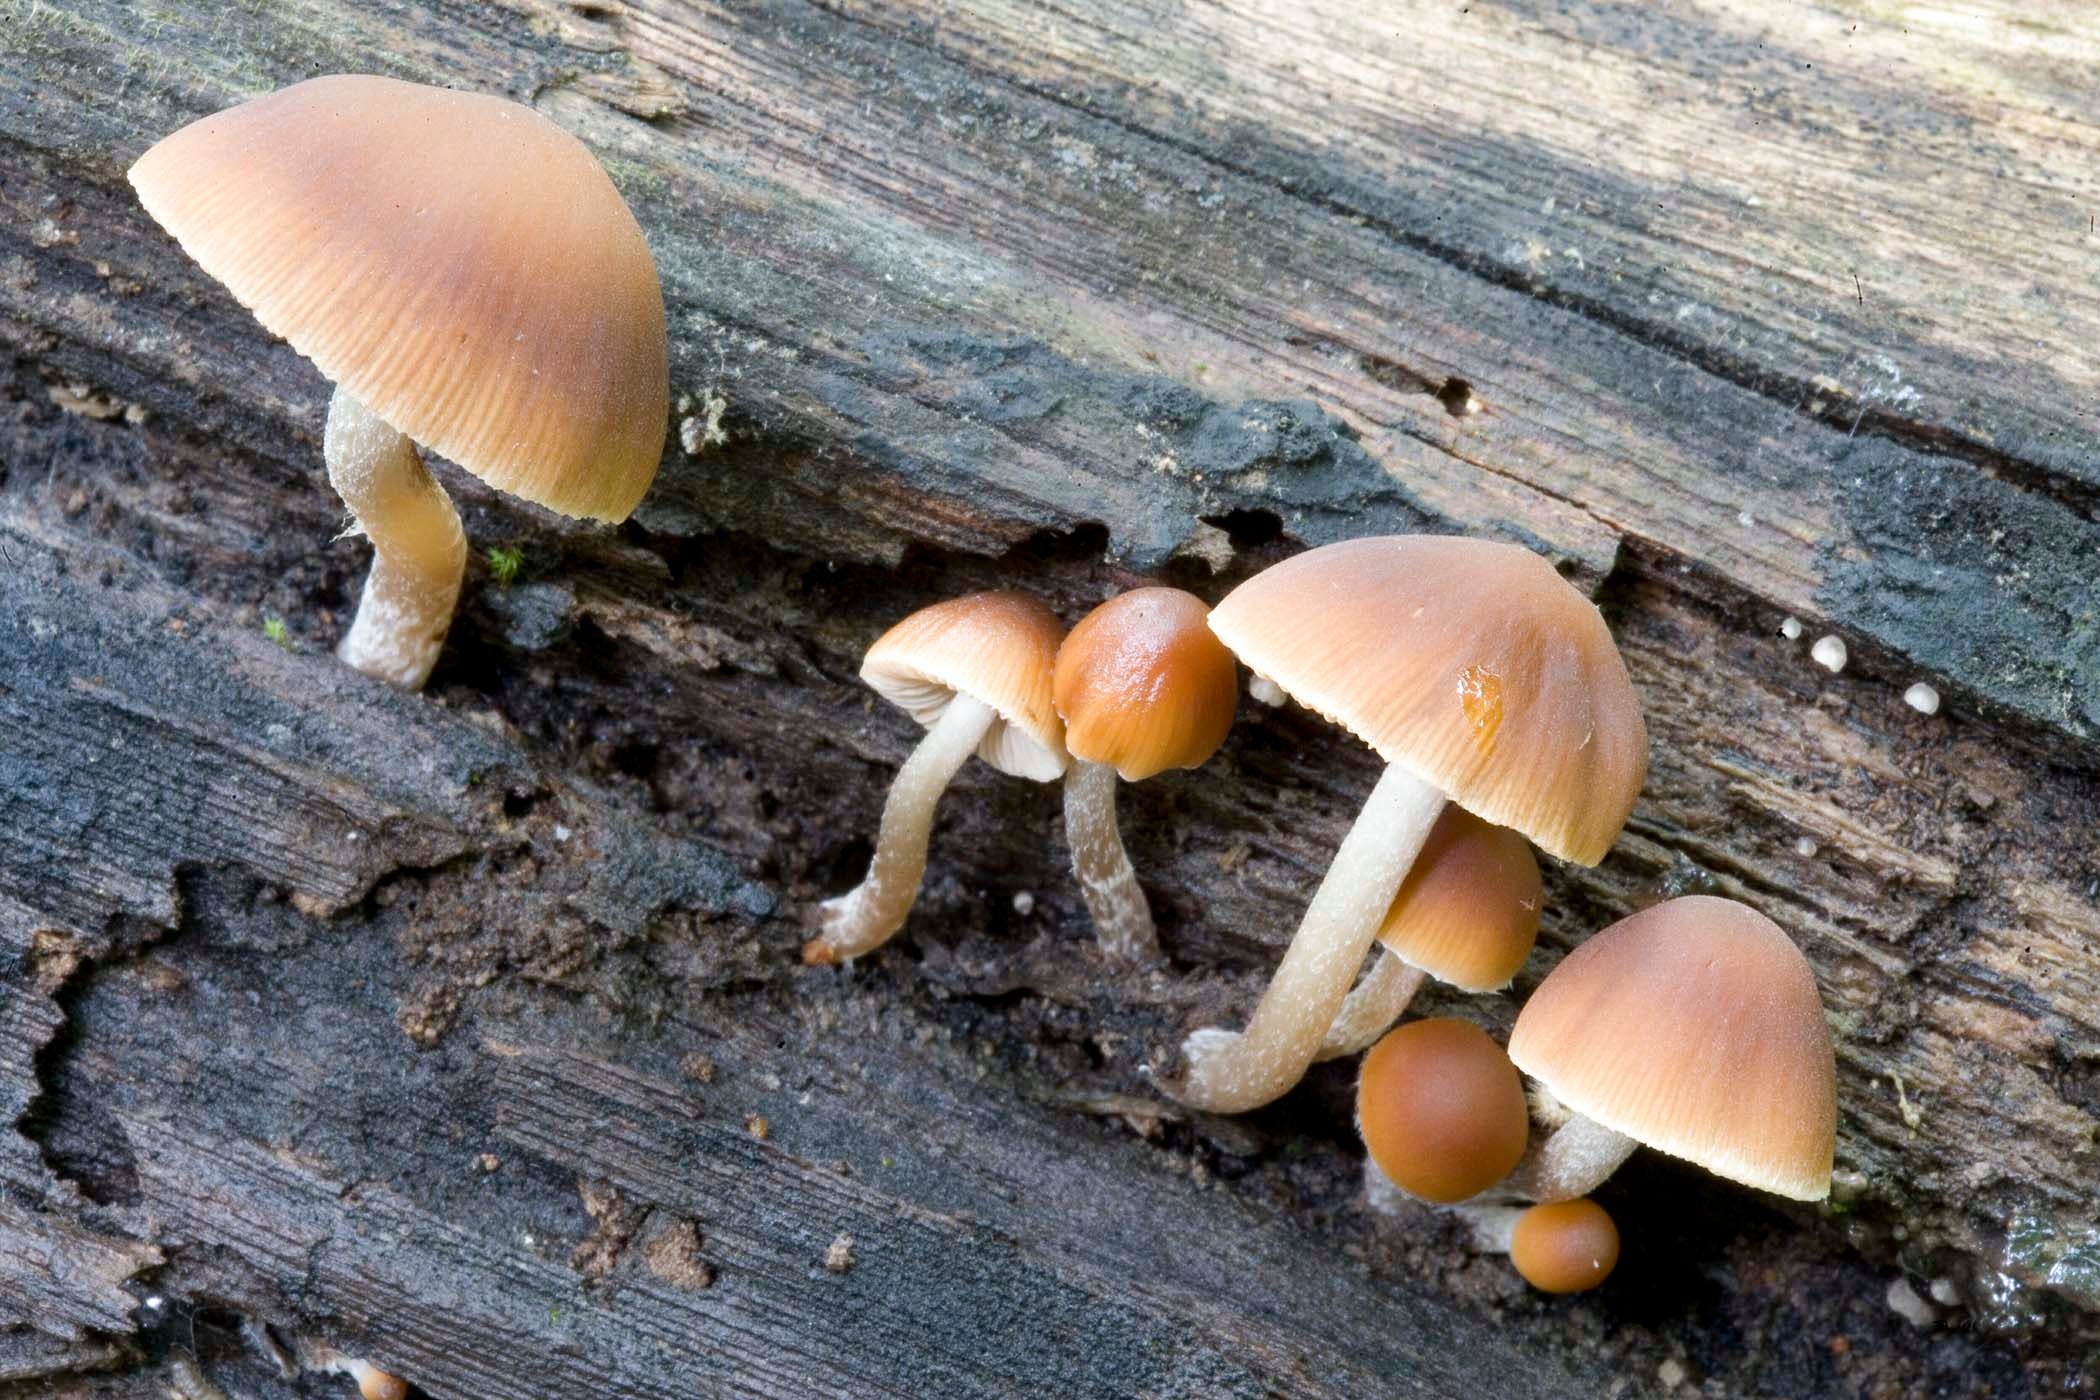 Poisonous Magic Mushrooms